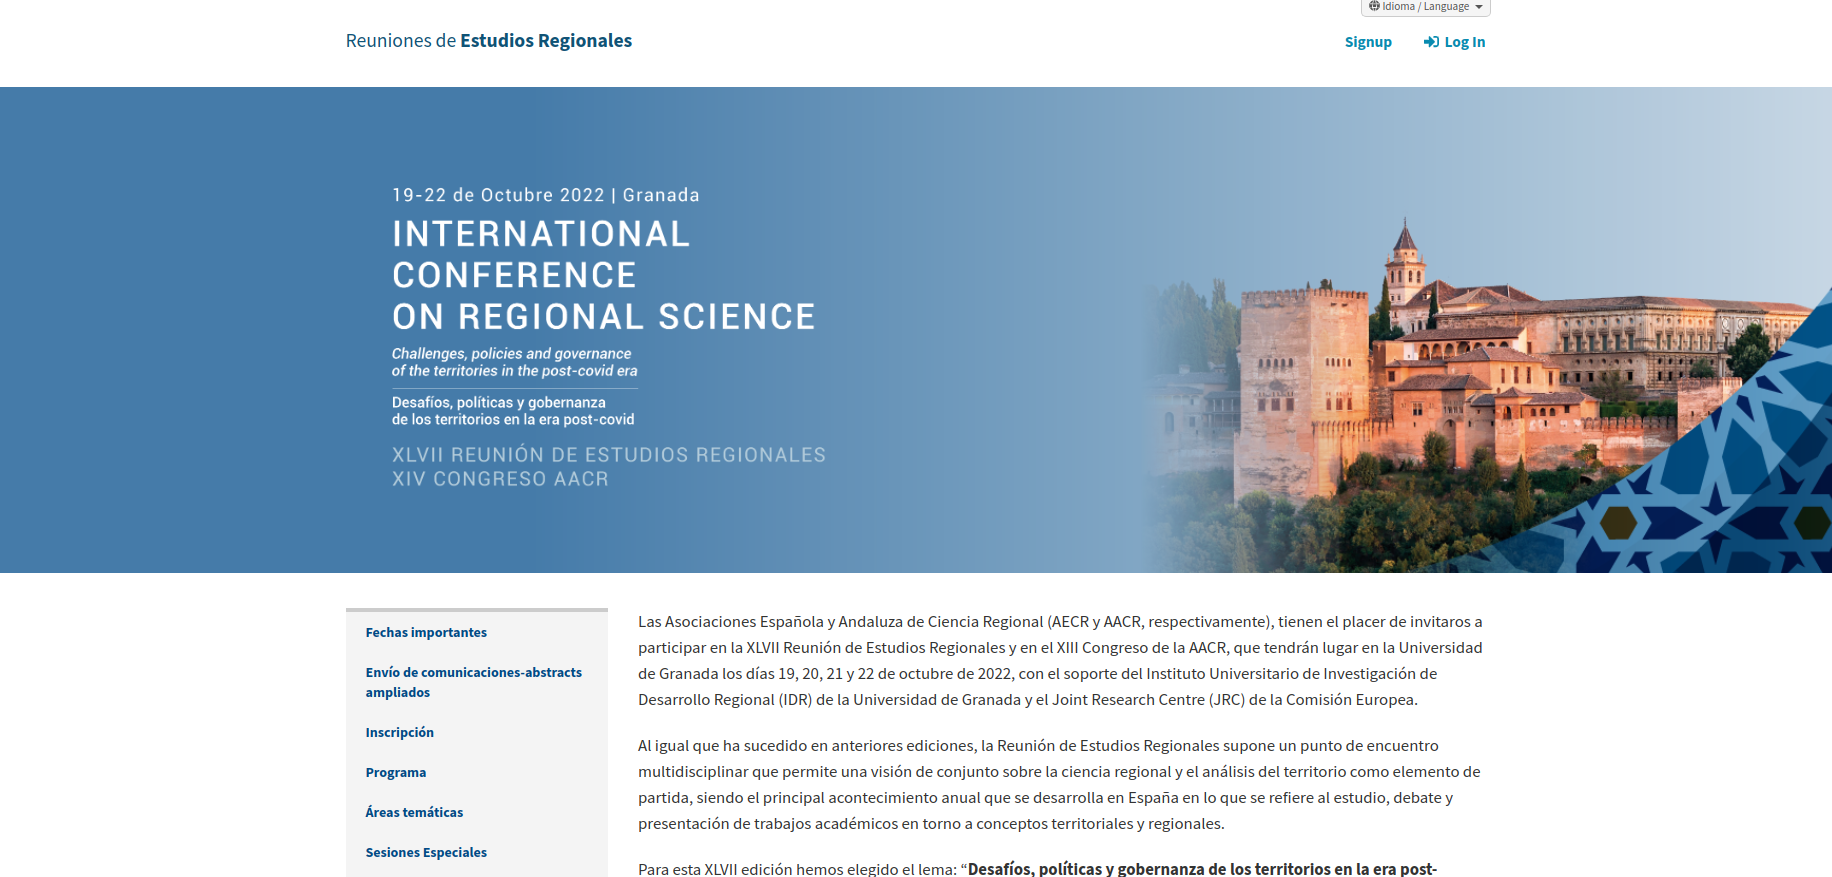 captura web del XLVII Reunión de Estudios Regionales y XIII Congreso de la Asociación Andaluza de Ciencia Regional 